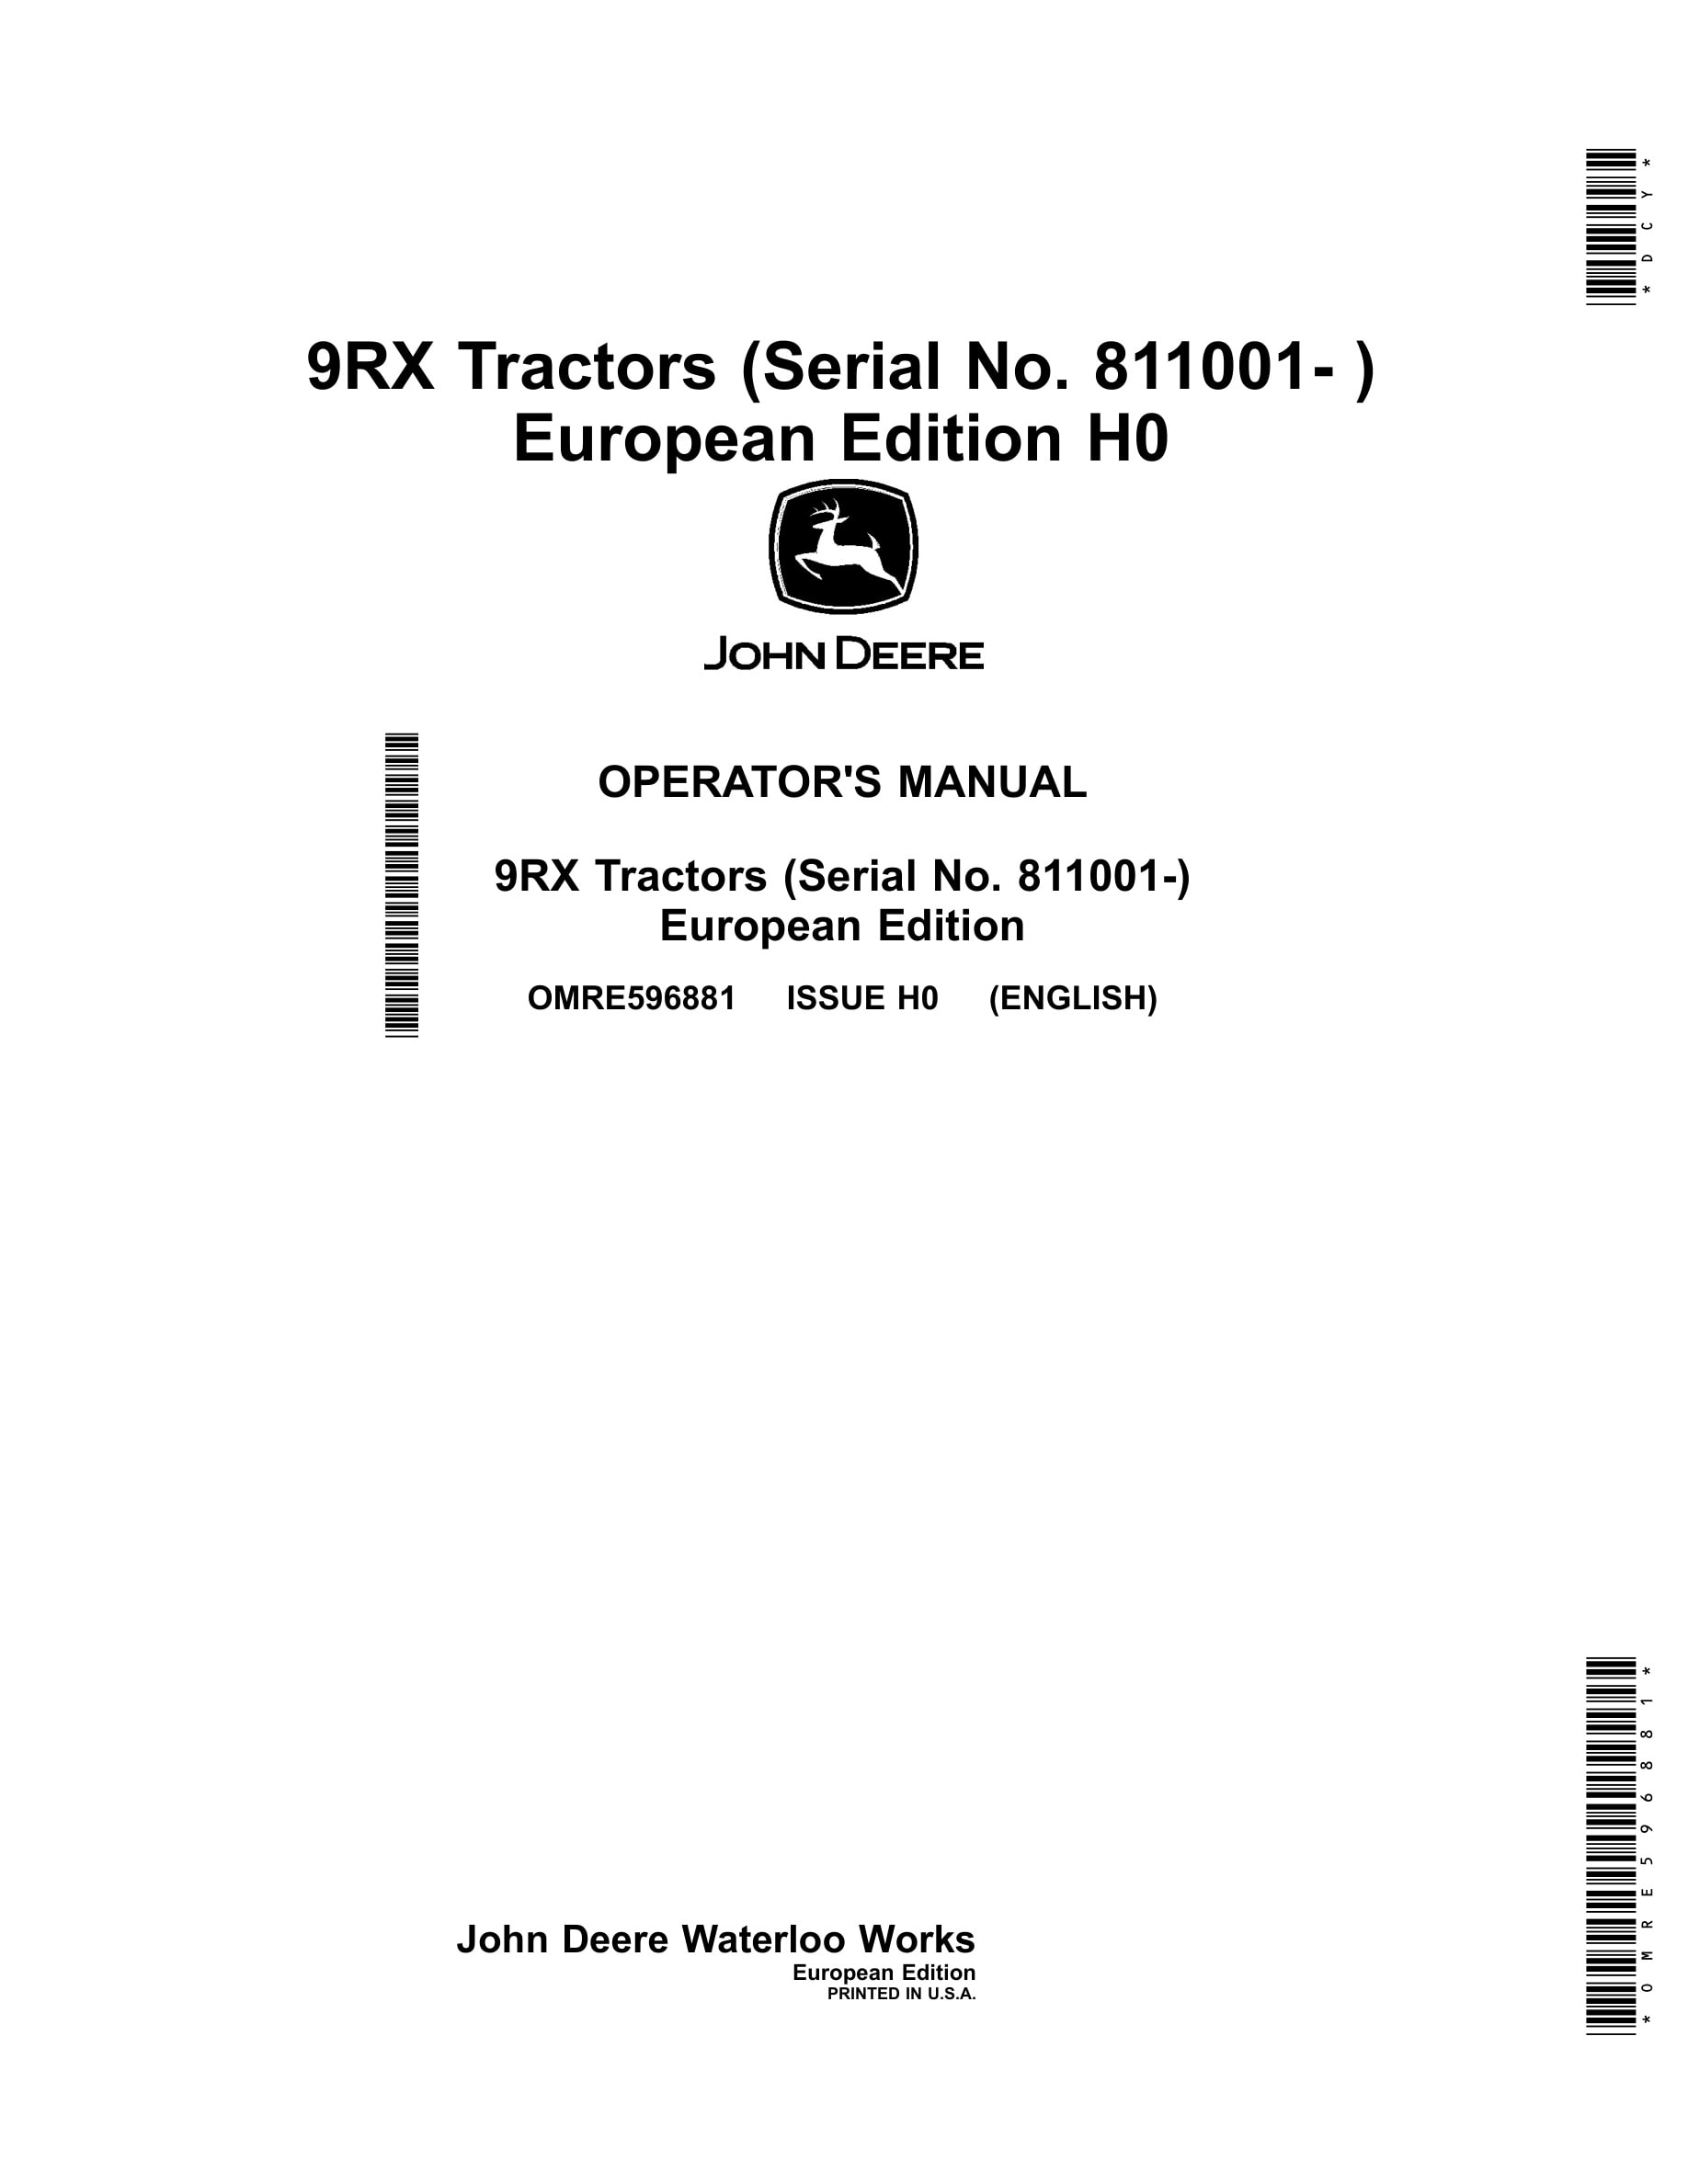 John Deere 9rx Tractors Operator Manuals OMRE596881-1